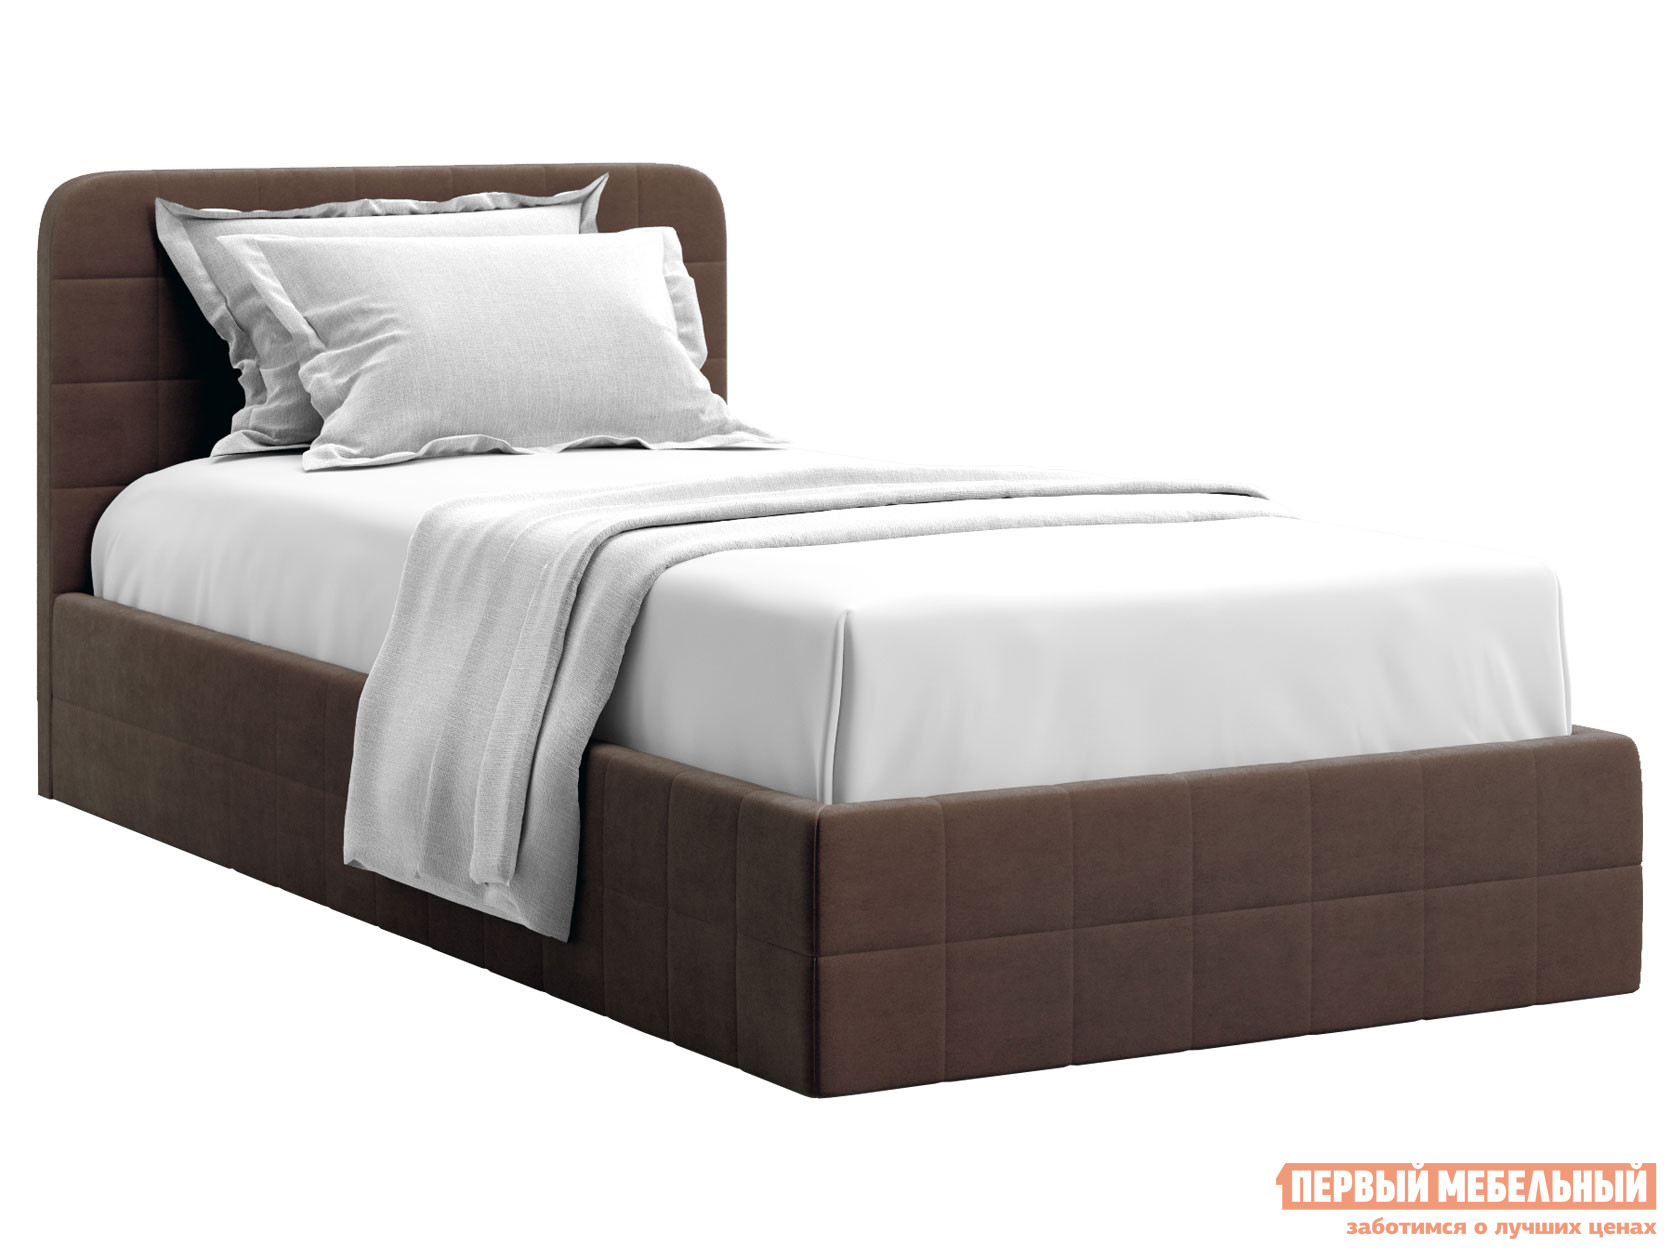 Односпальная кровать  Адда ПМ Коричневый, велюр, 90х200 см